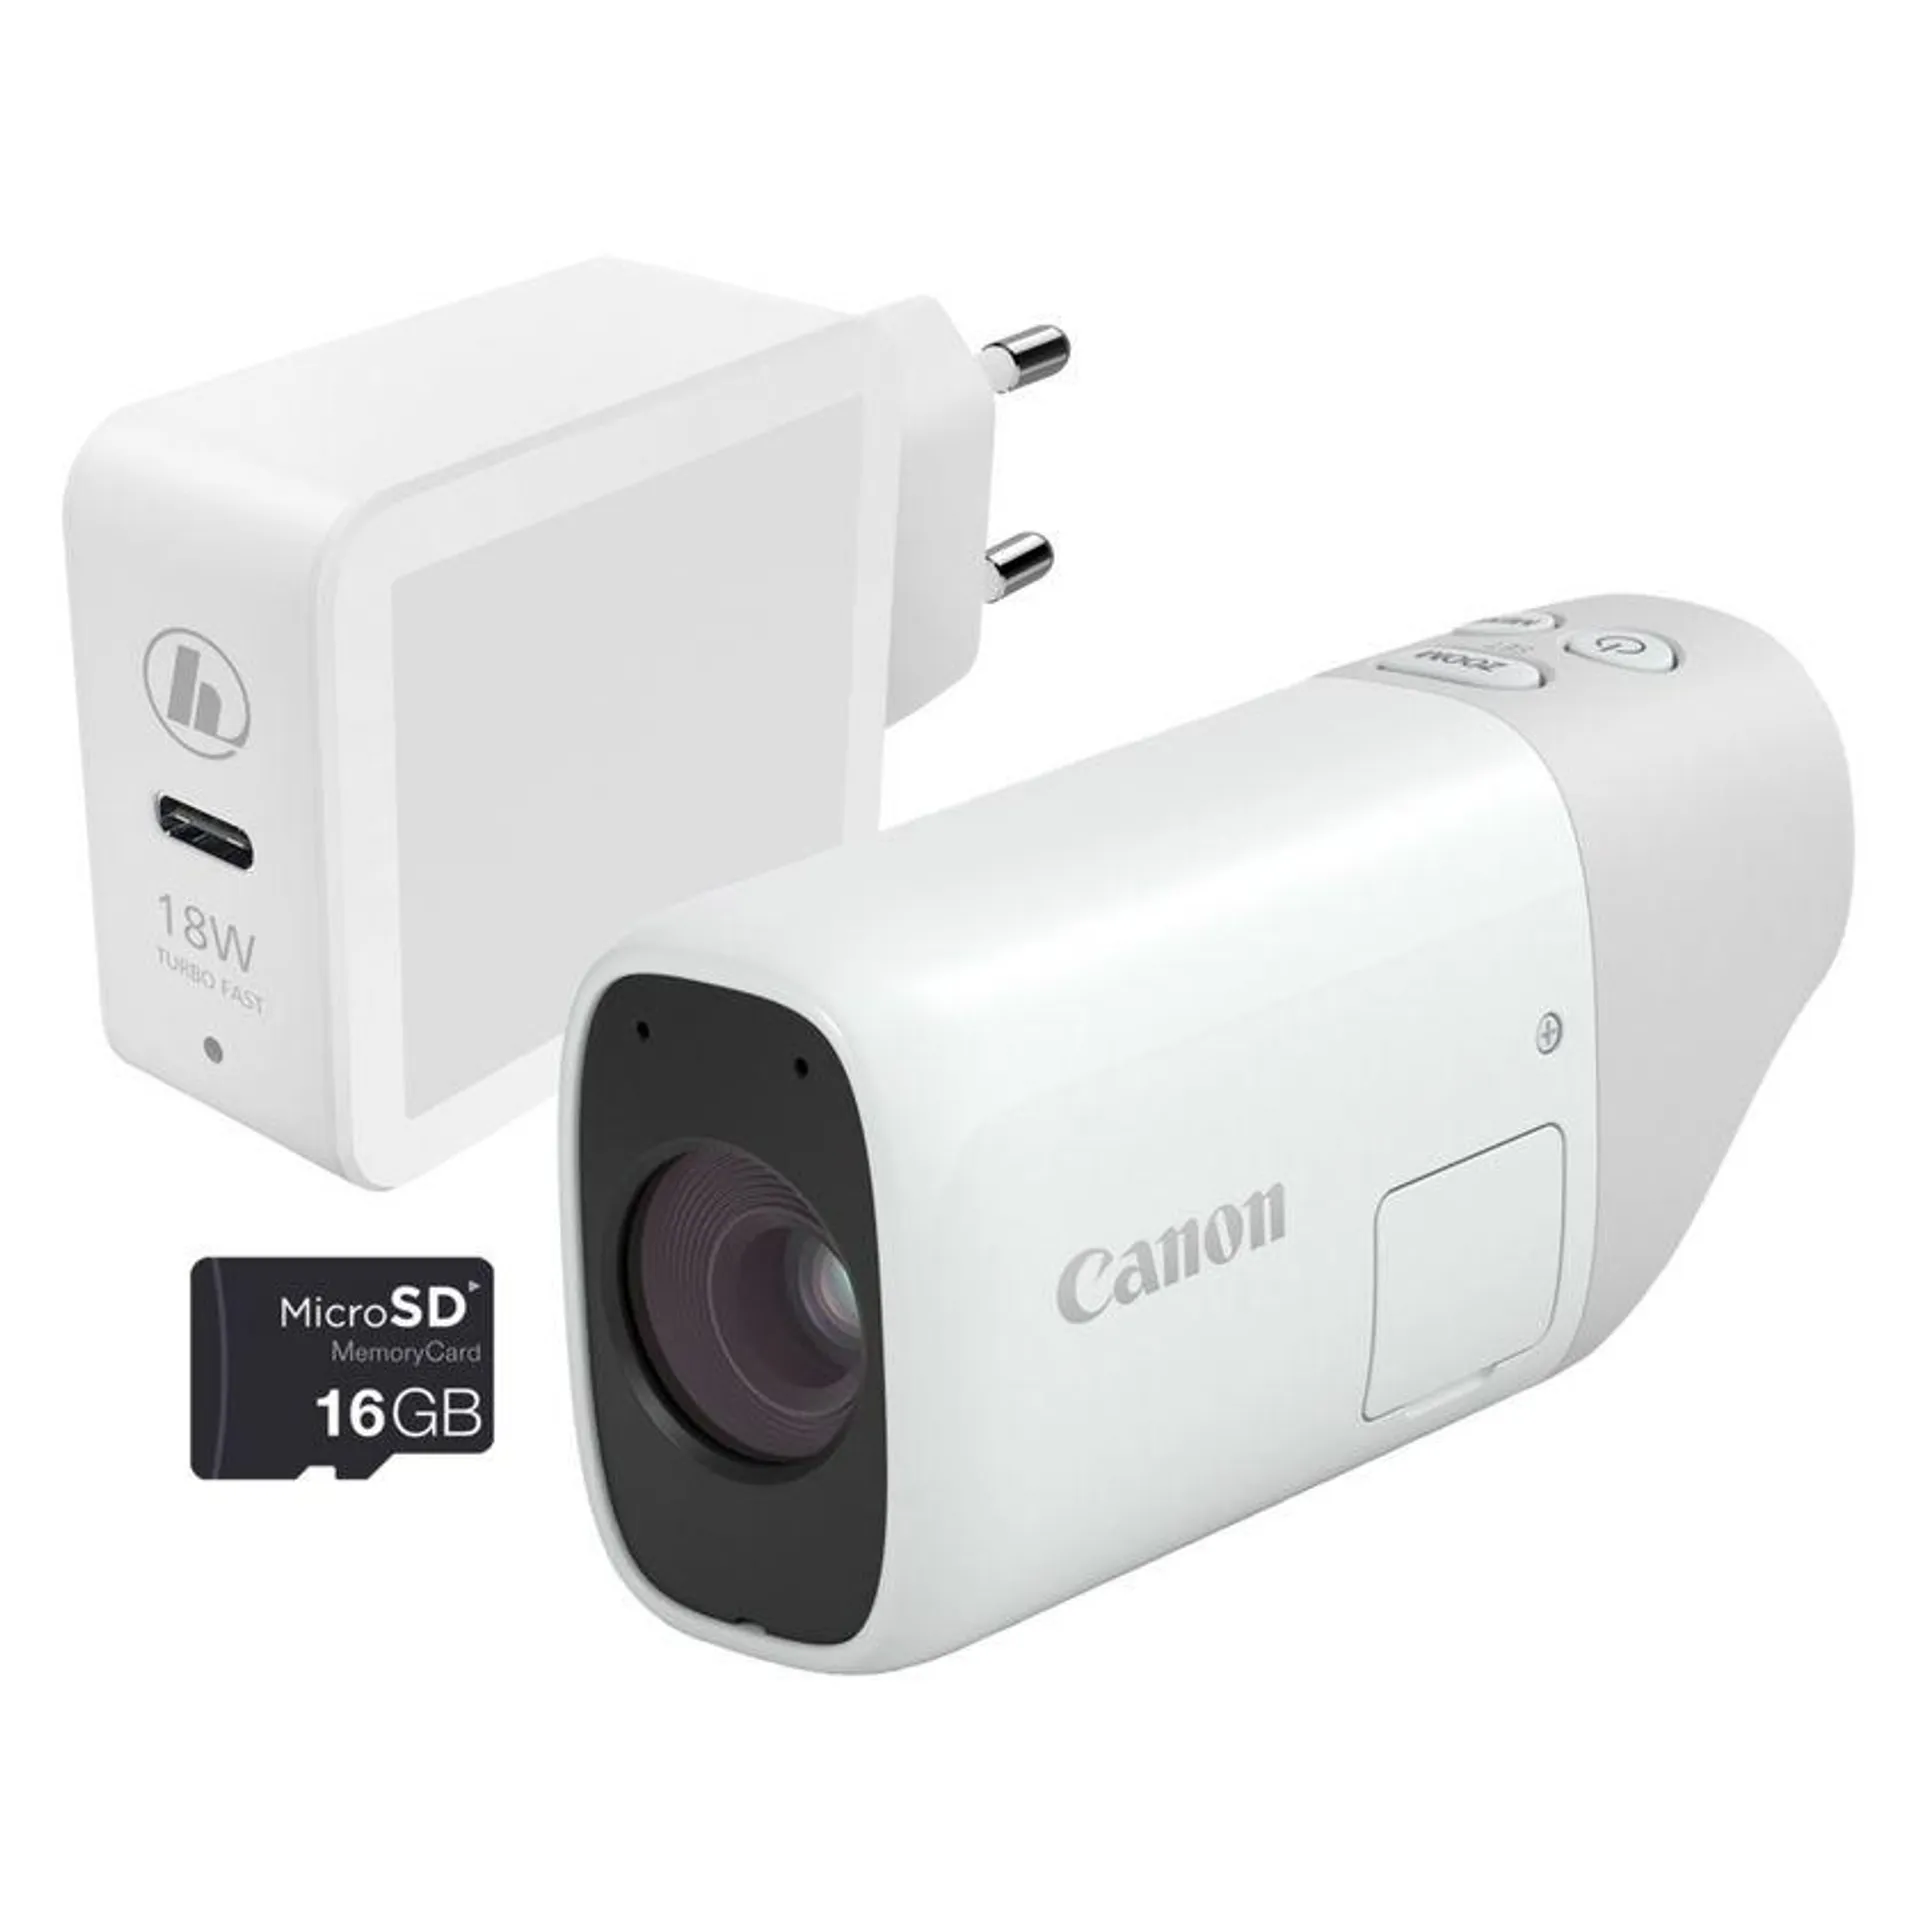 Canon PowerShot ZOOM, cámara compacta monocular con teleobjetivo, kit esencial, blanco